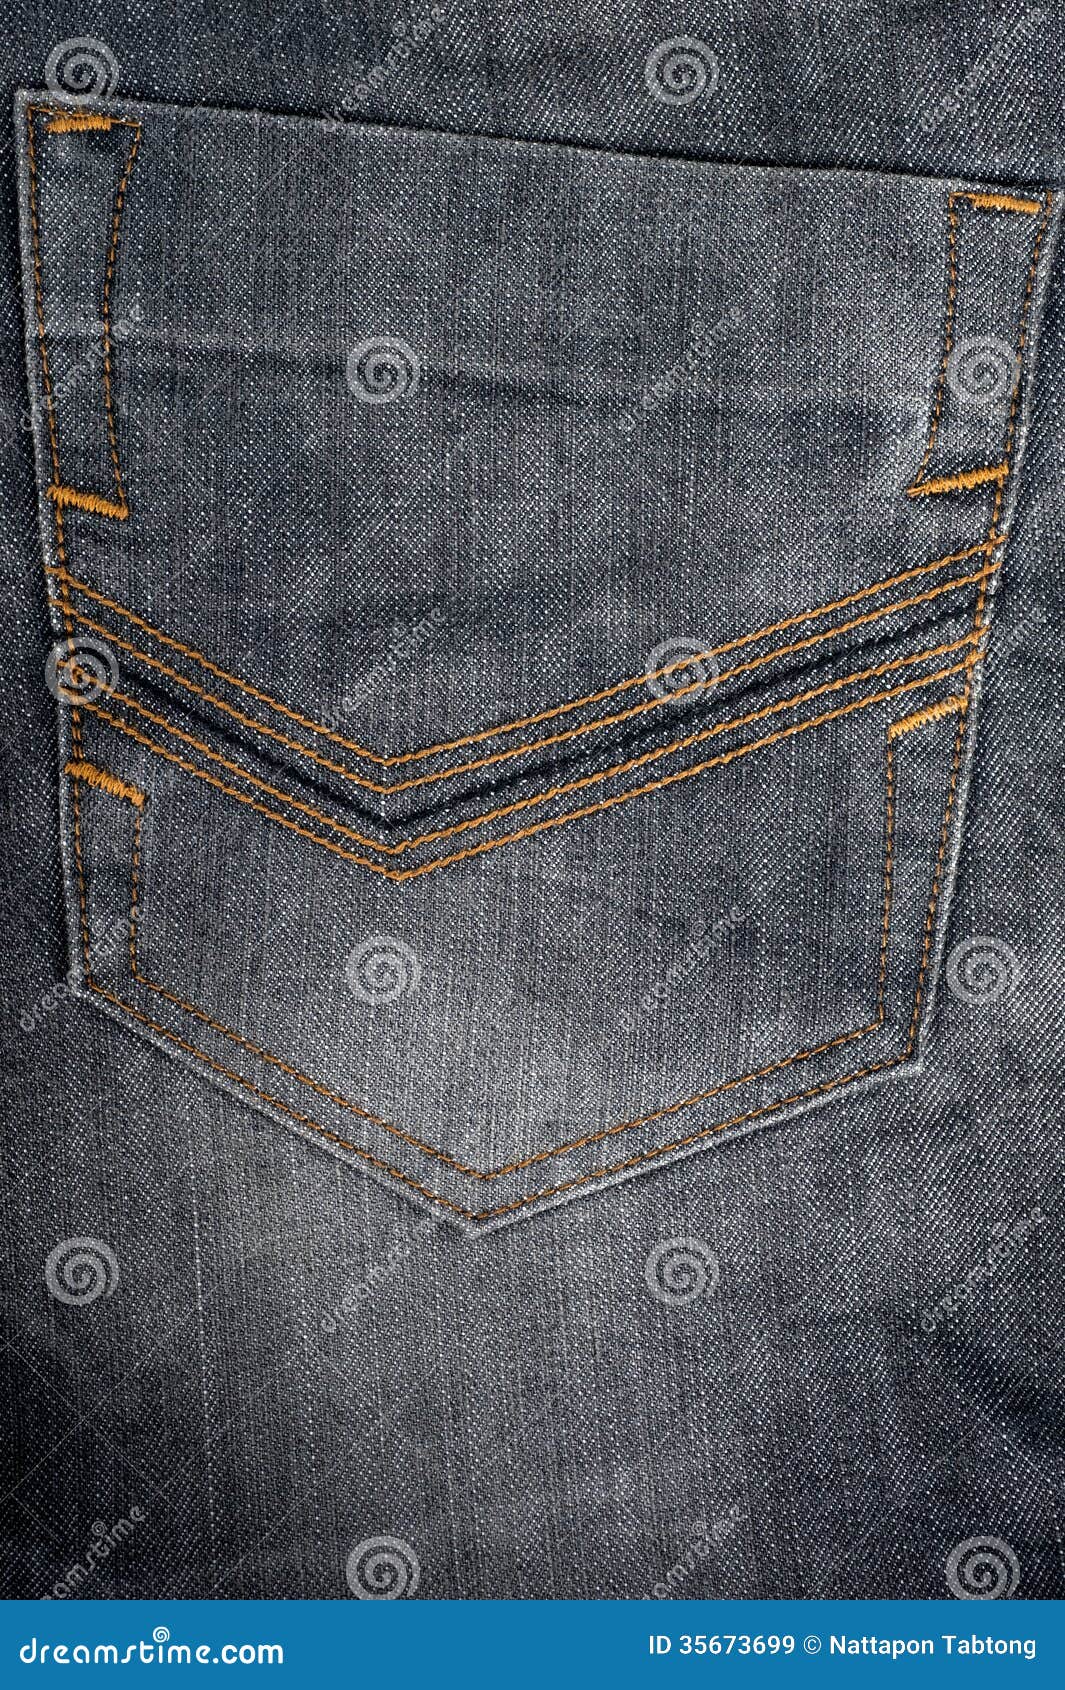 Jeans Denim Detail Back Pocket Background Royalty Free Stock Images ...